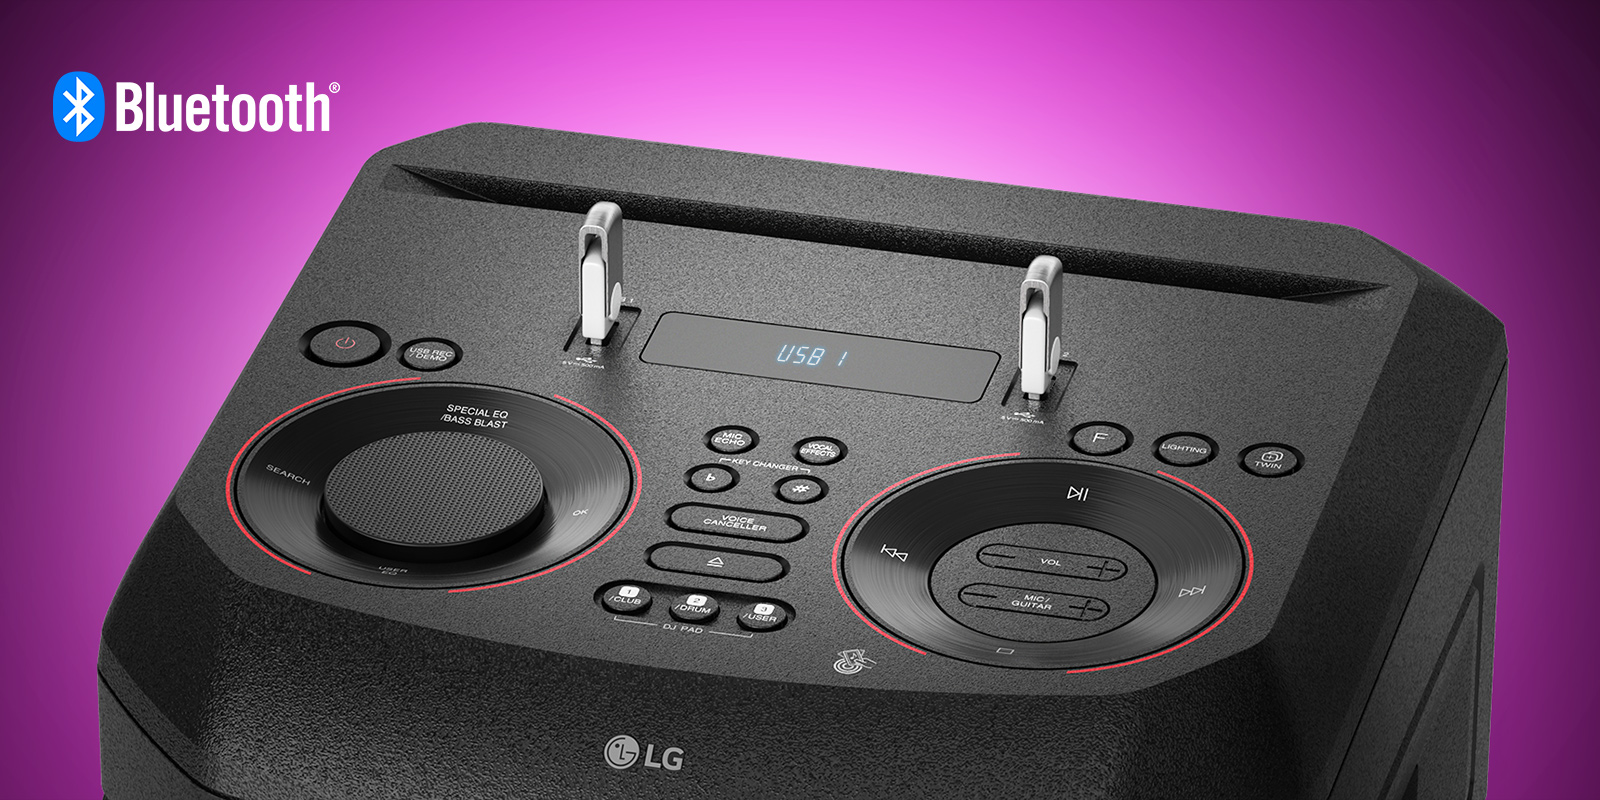 Gros plan des commandes sur le dessus de l’enceinte LG XBOOM avec deux clé USB branchées. Logo Bluetooth en haut à gauche de l’image.